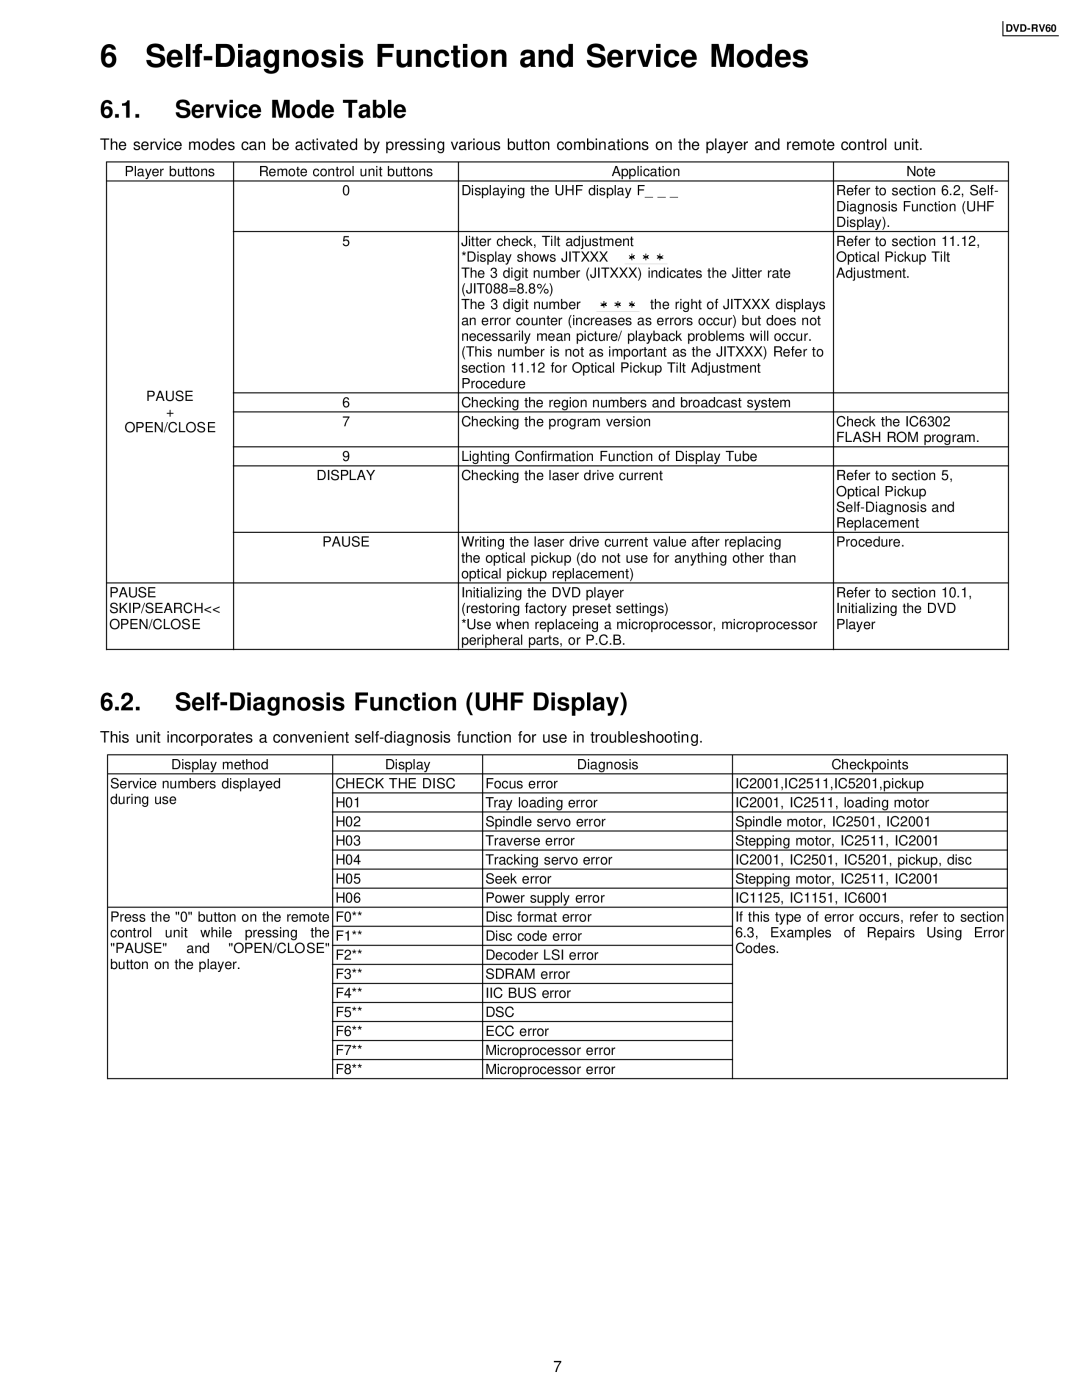 Panasonic DVDRV60 Self-Diagnosis Function and Service Modes, Service Mode Table, Self-Diagnosis Function UHF Display 